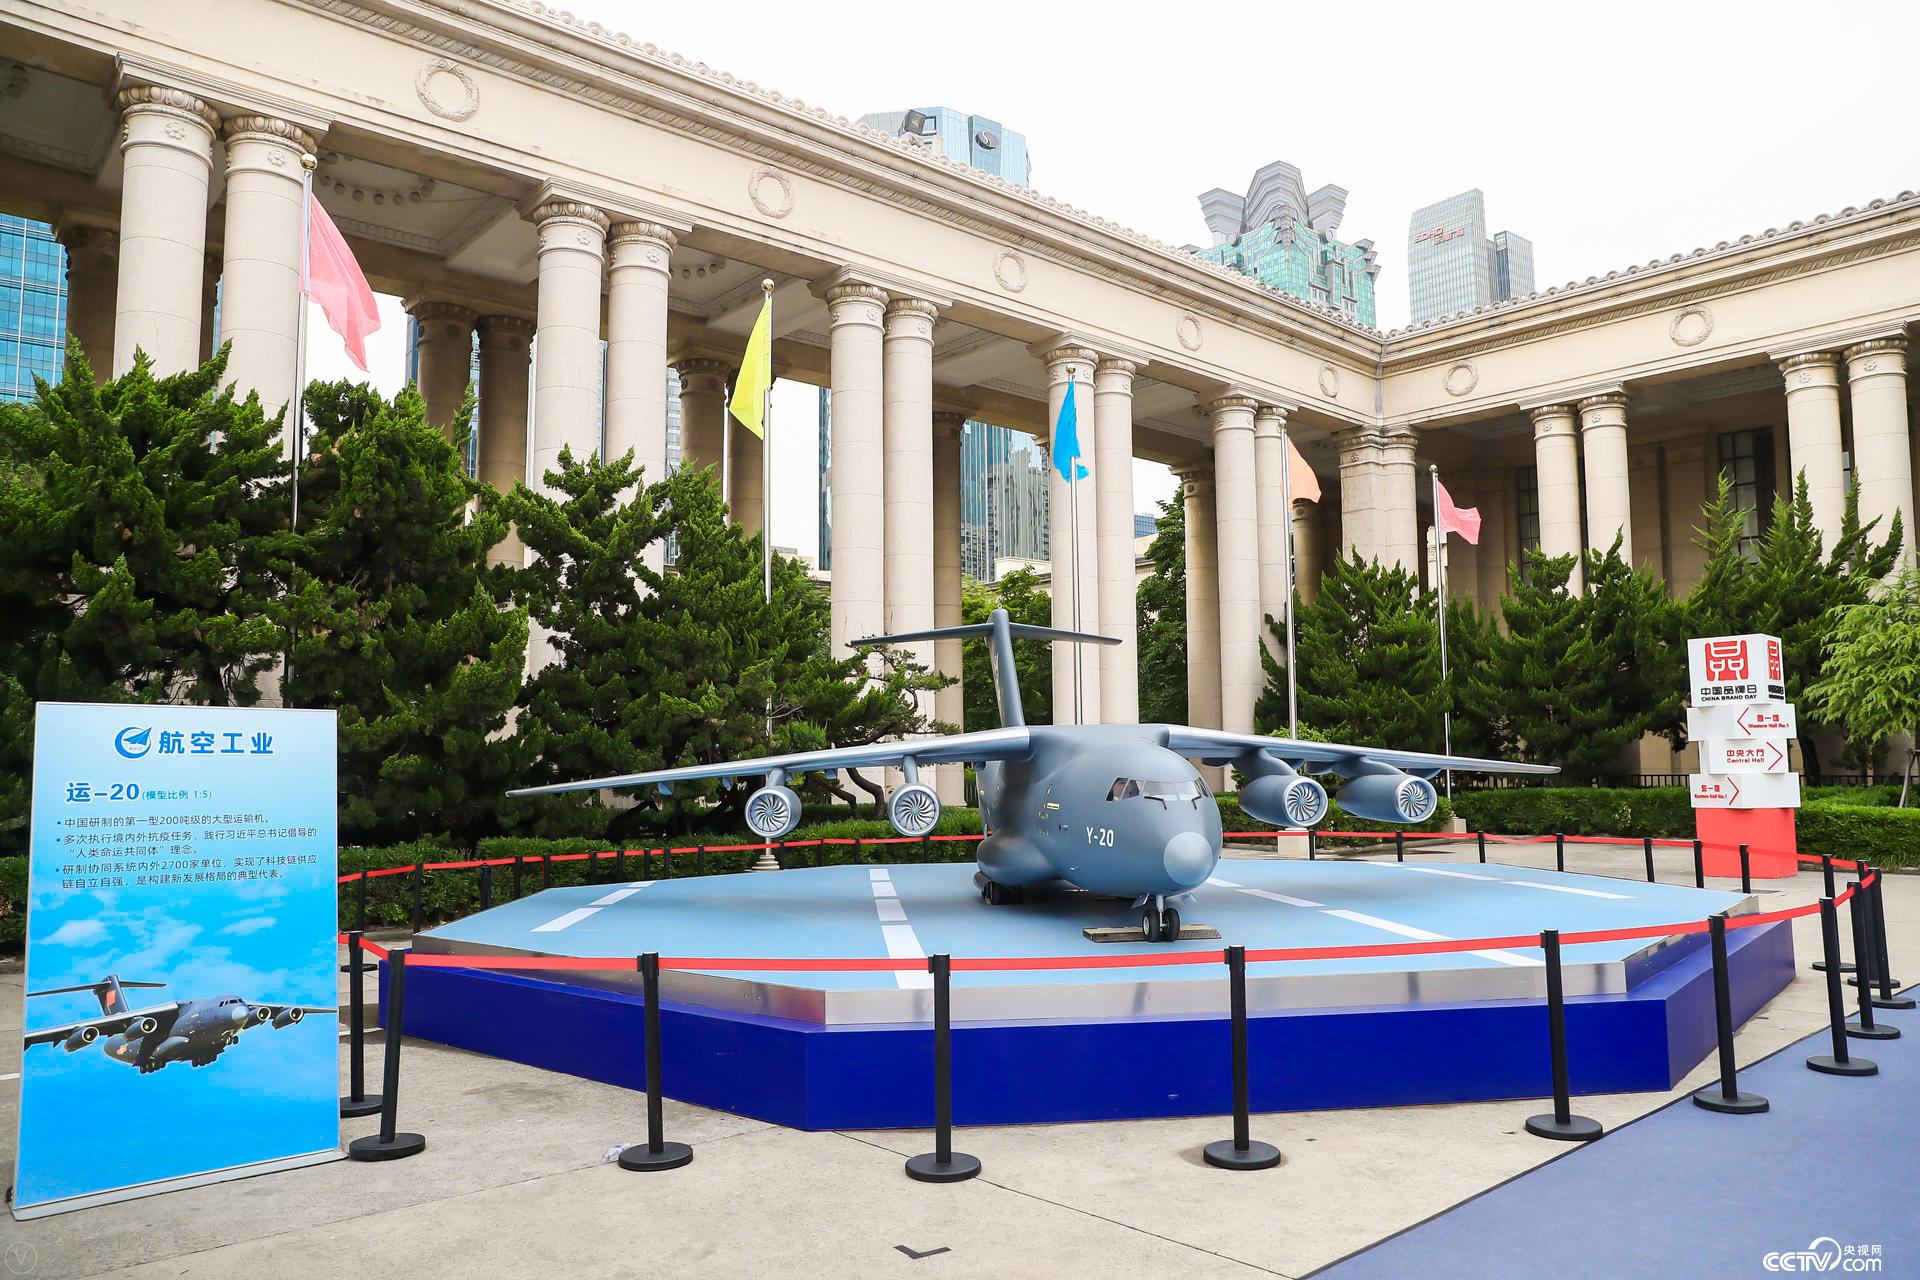 国产大型运输机运-20模型亮相中国自主品牌博览会